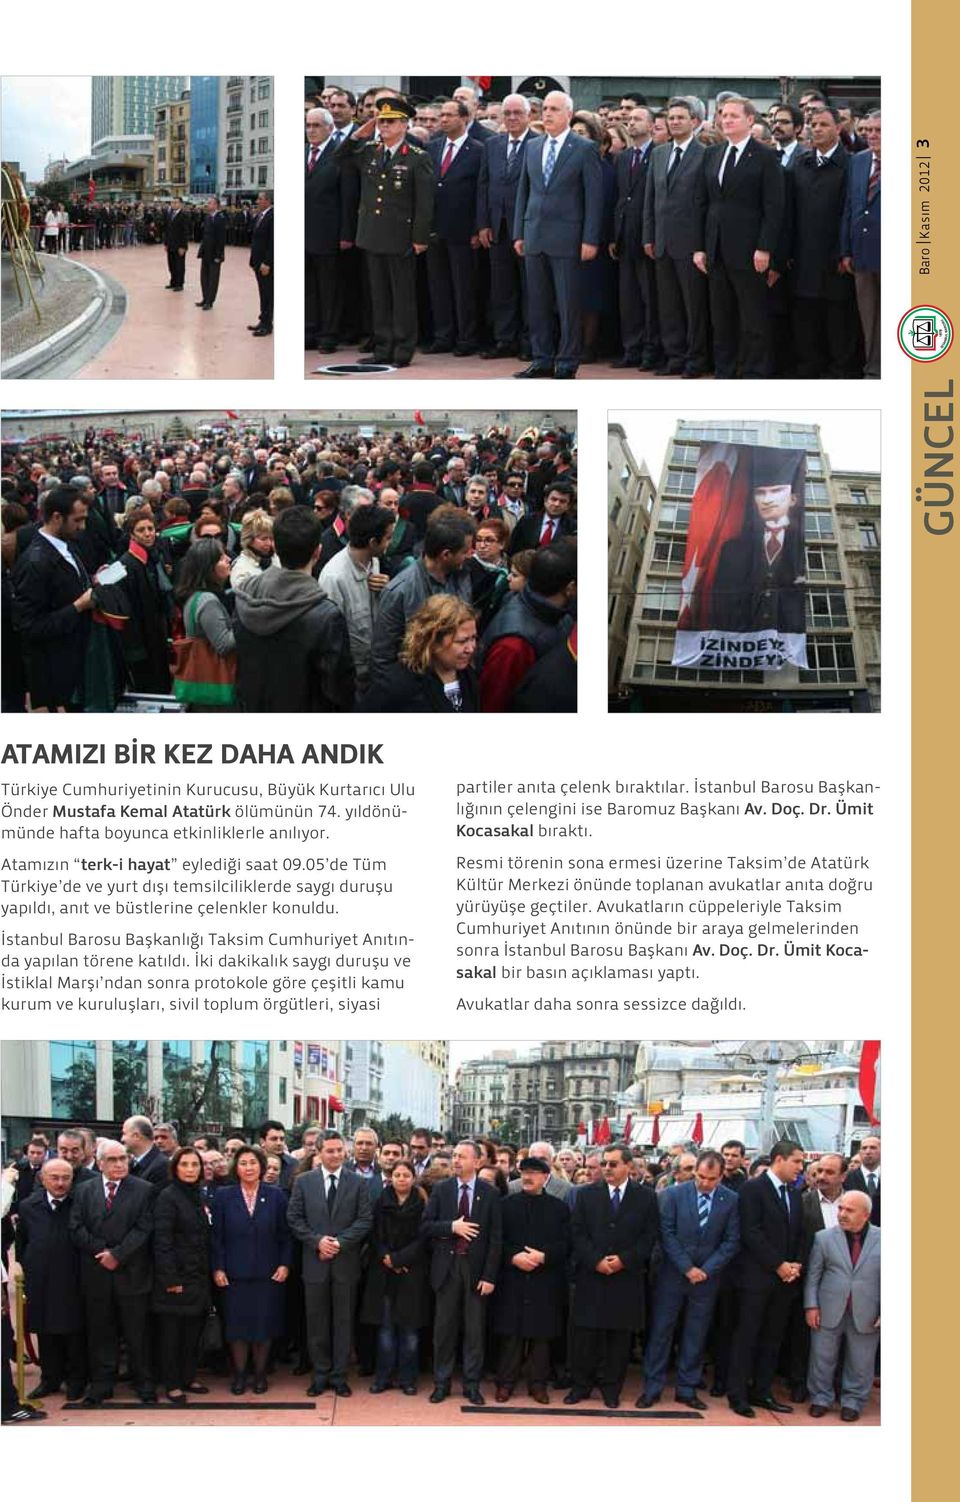 İstanbul Barosu Başkanlığı Taksim Cumhuriyet Anıtında yapılan törene katıldı.